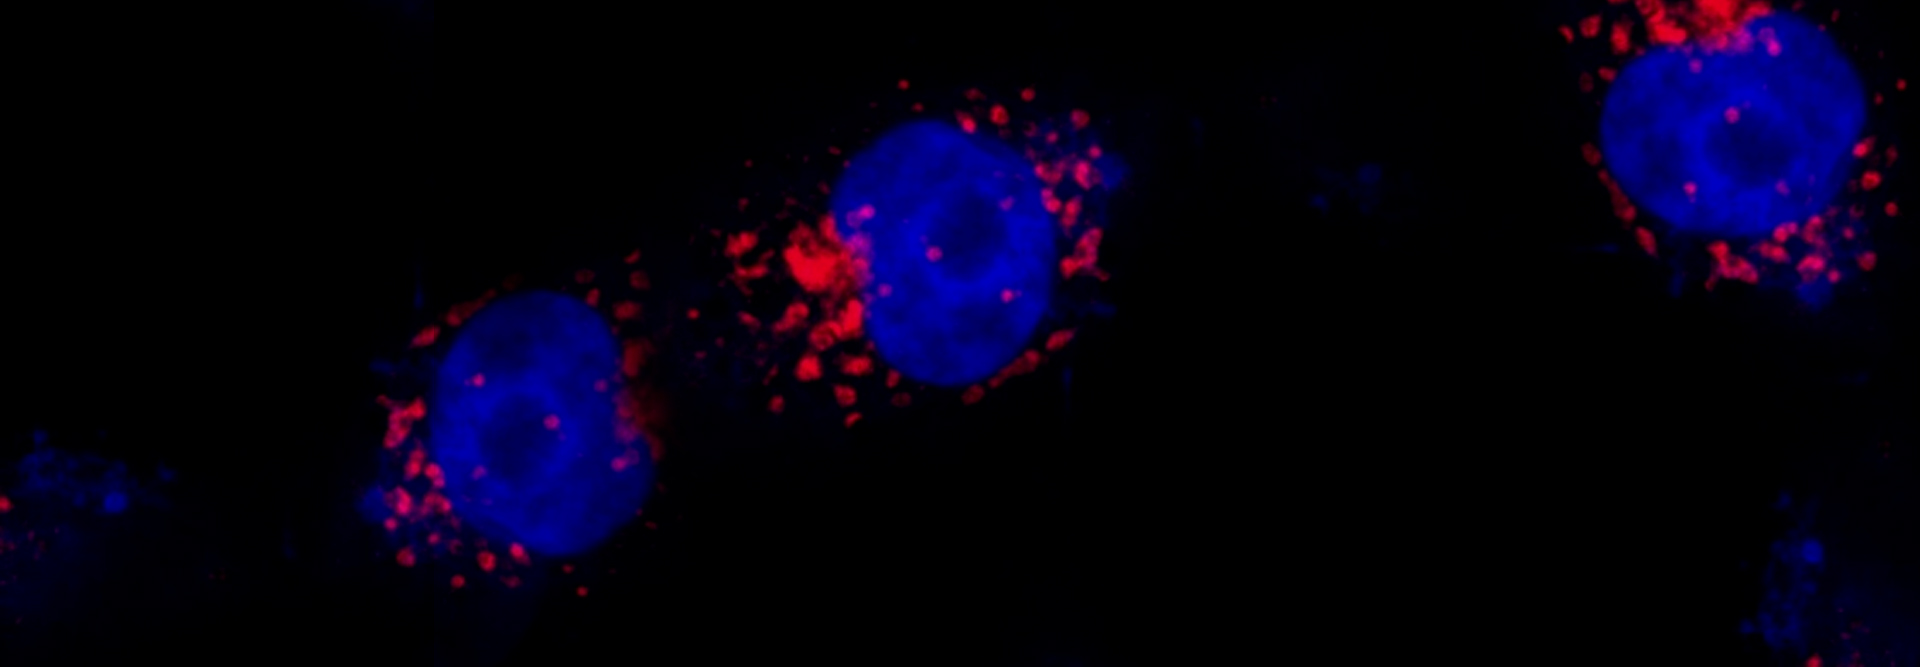 Imagem microscópica do microorganismo replicando na periferia do núcleo da célula